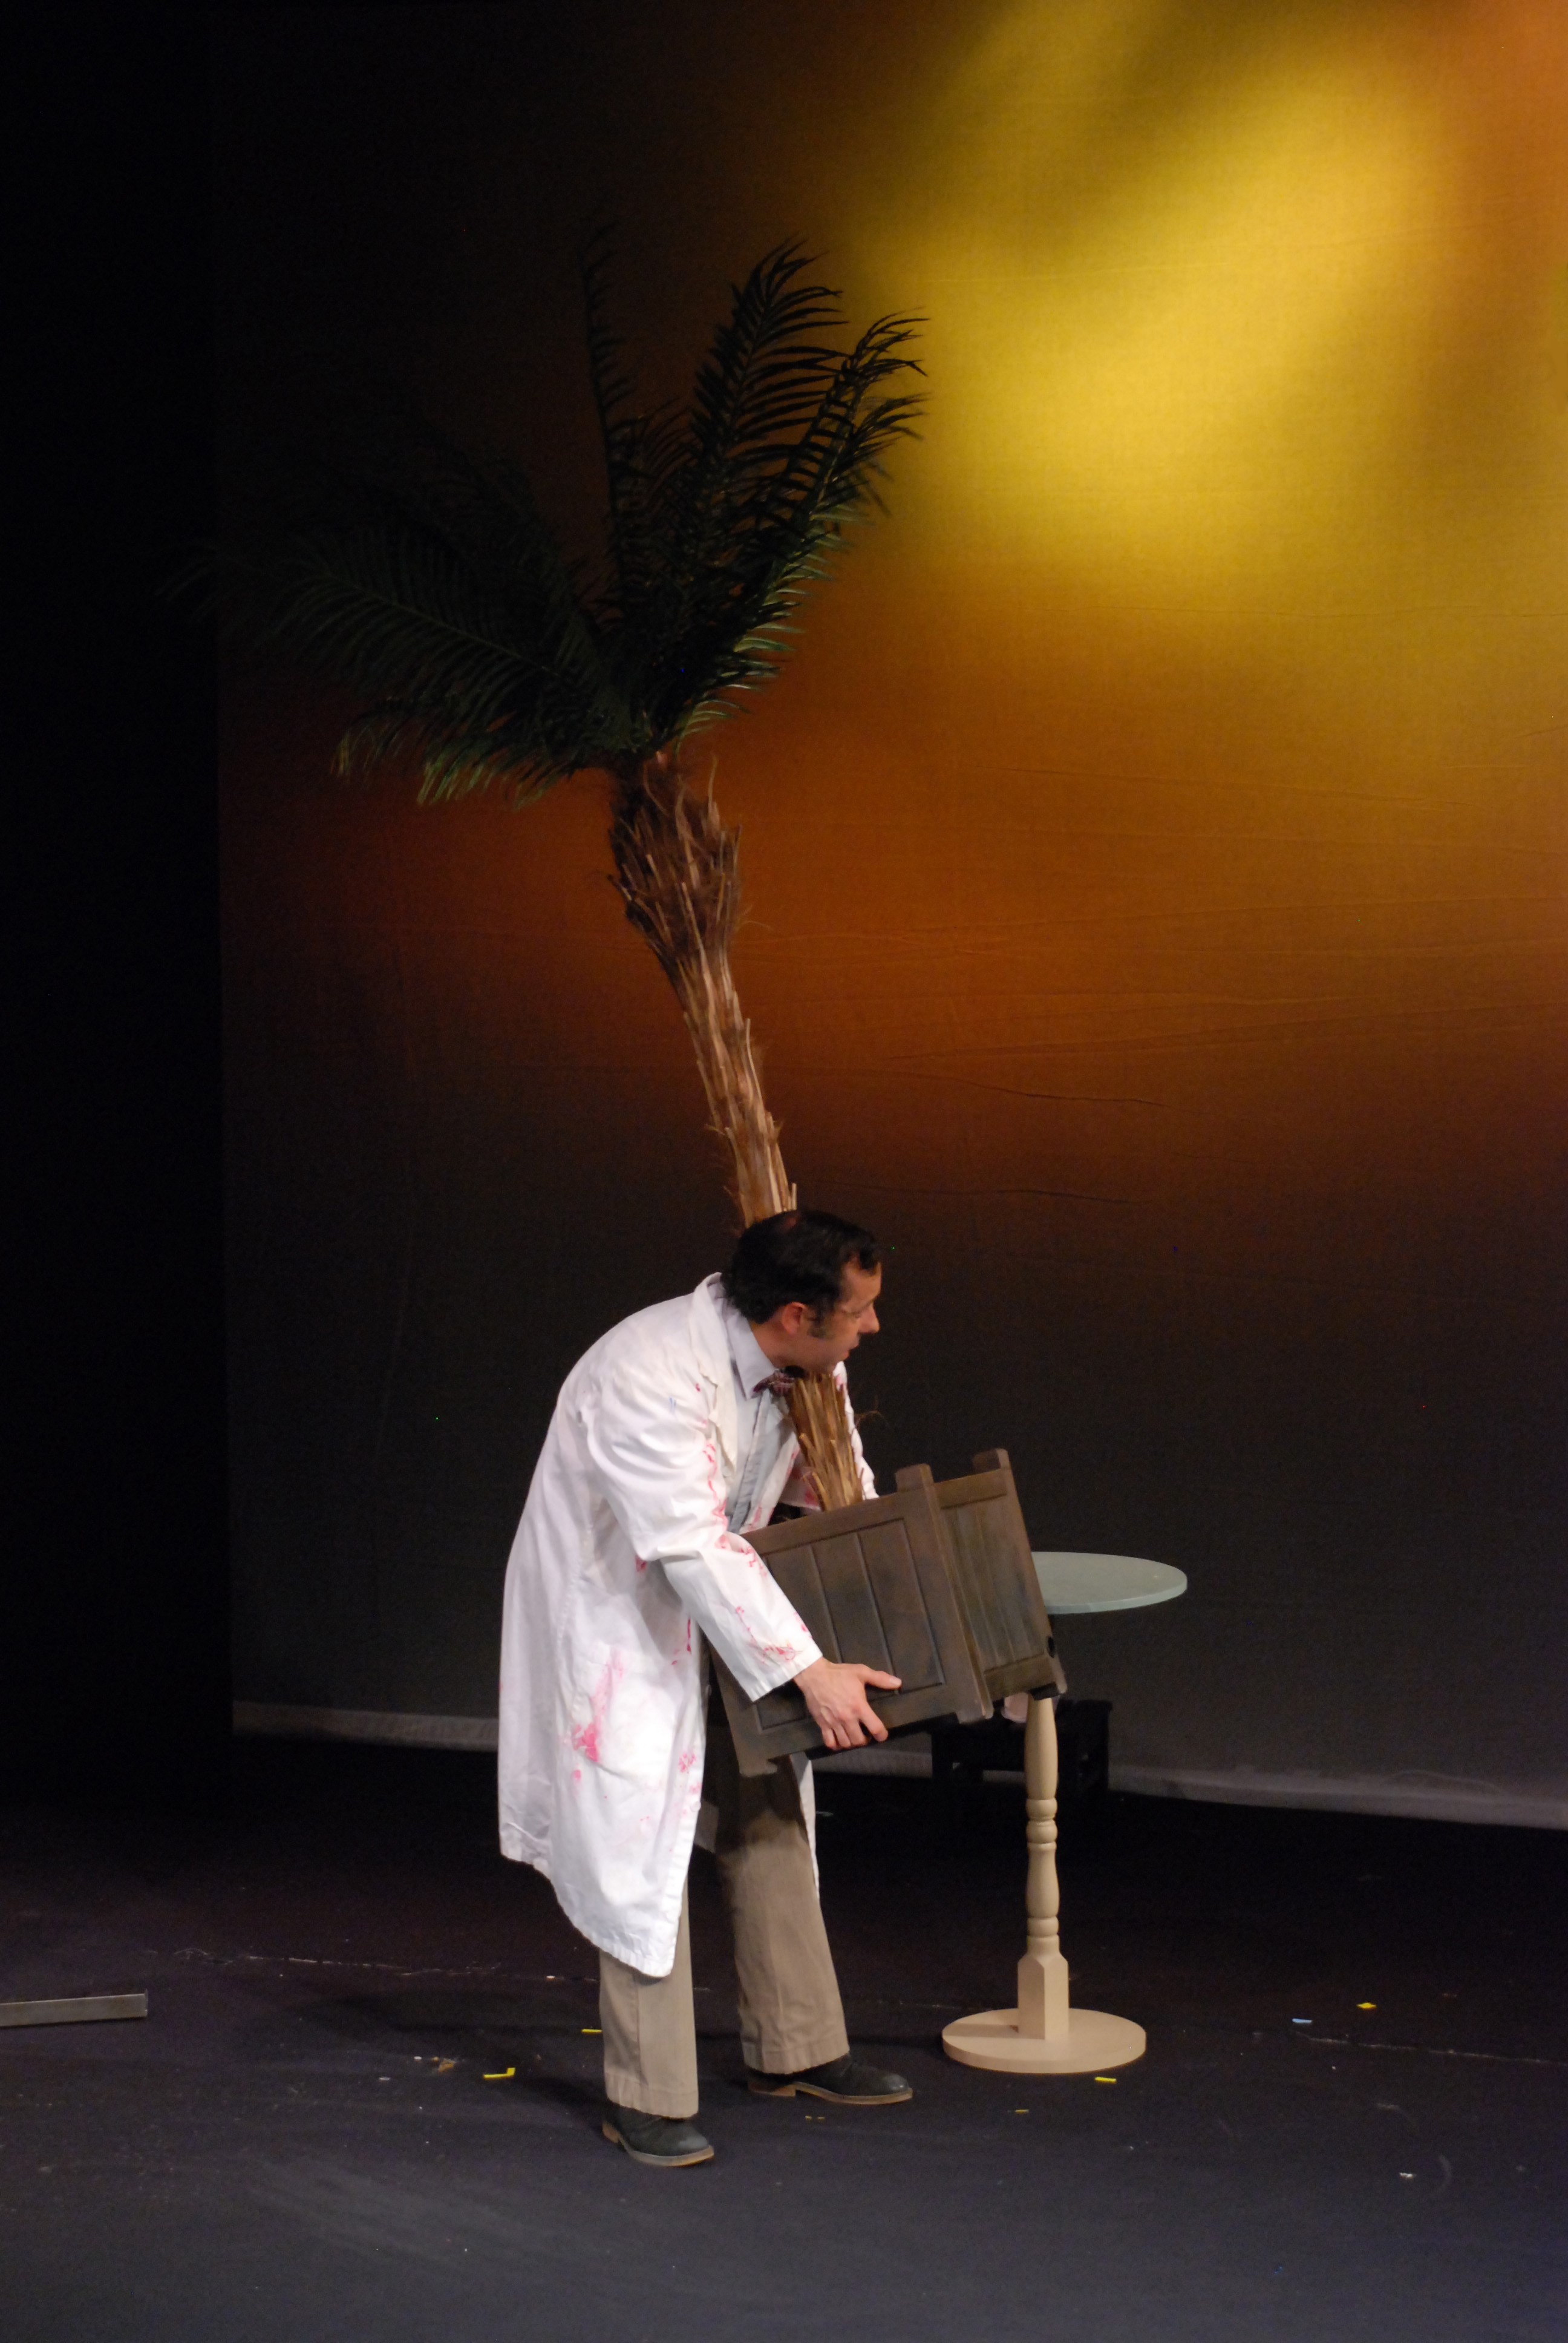 Un homme sur scène en blouse blanche transporte une grosse plante.